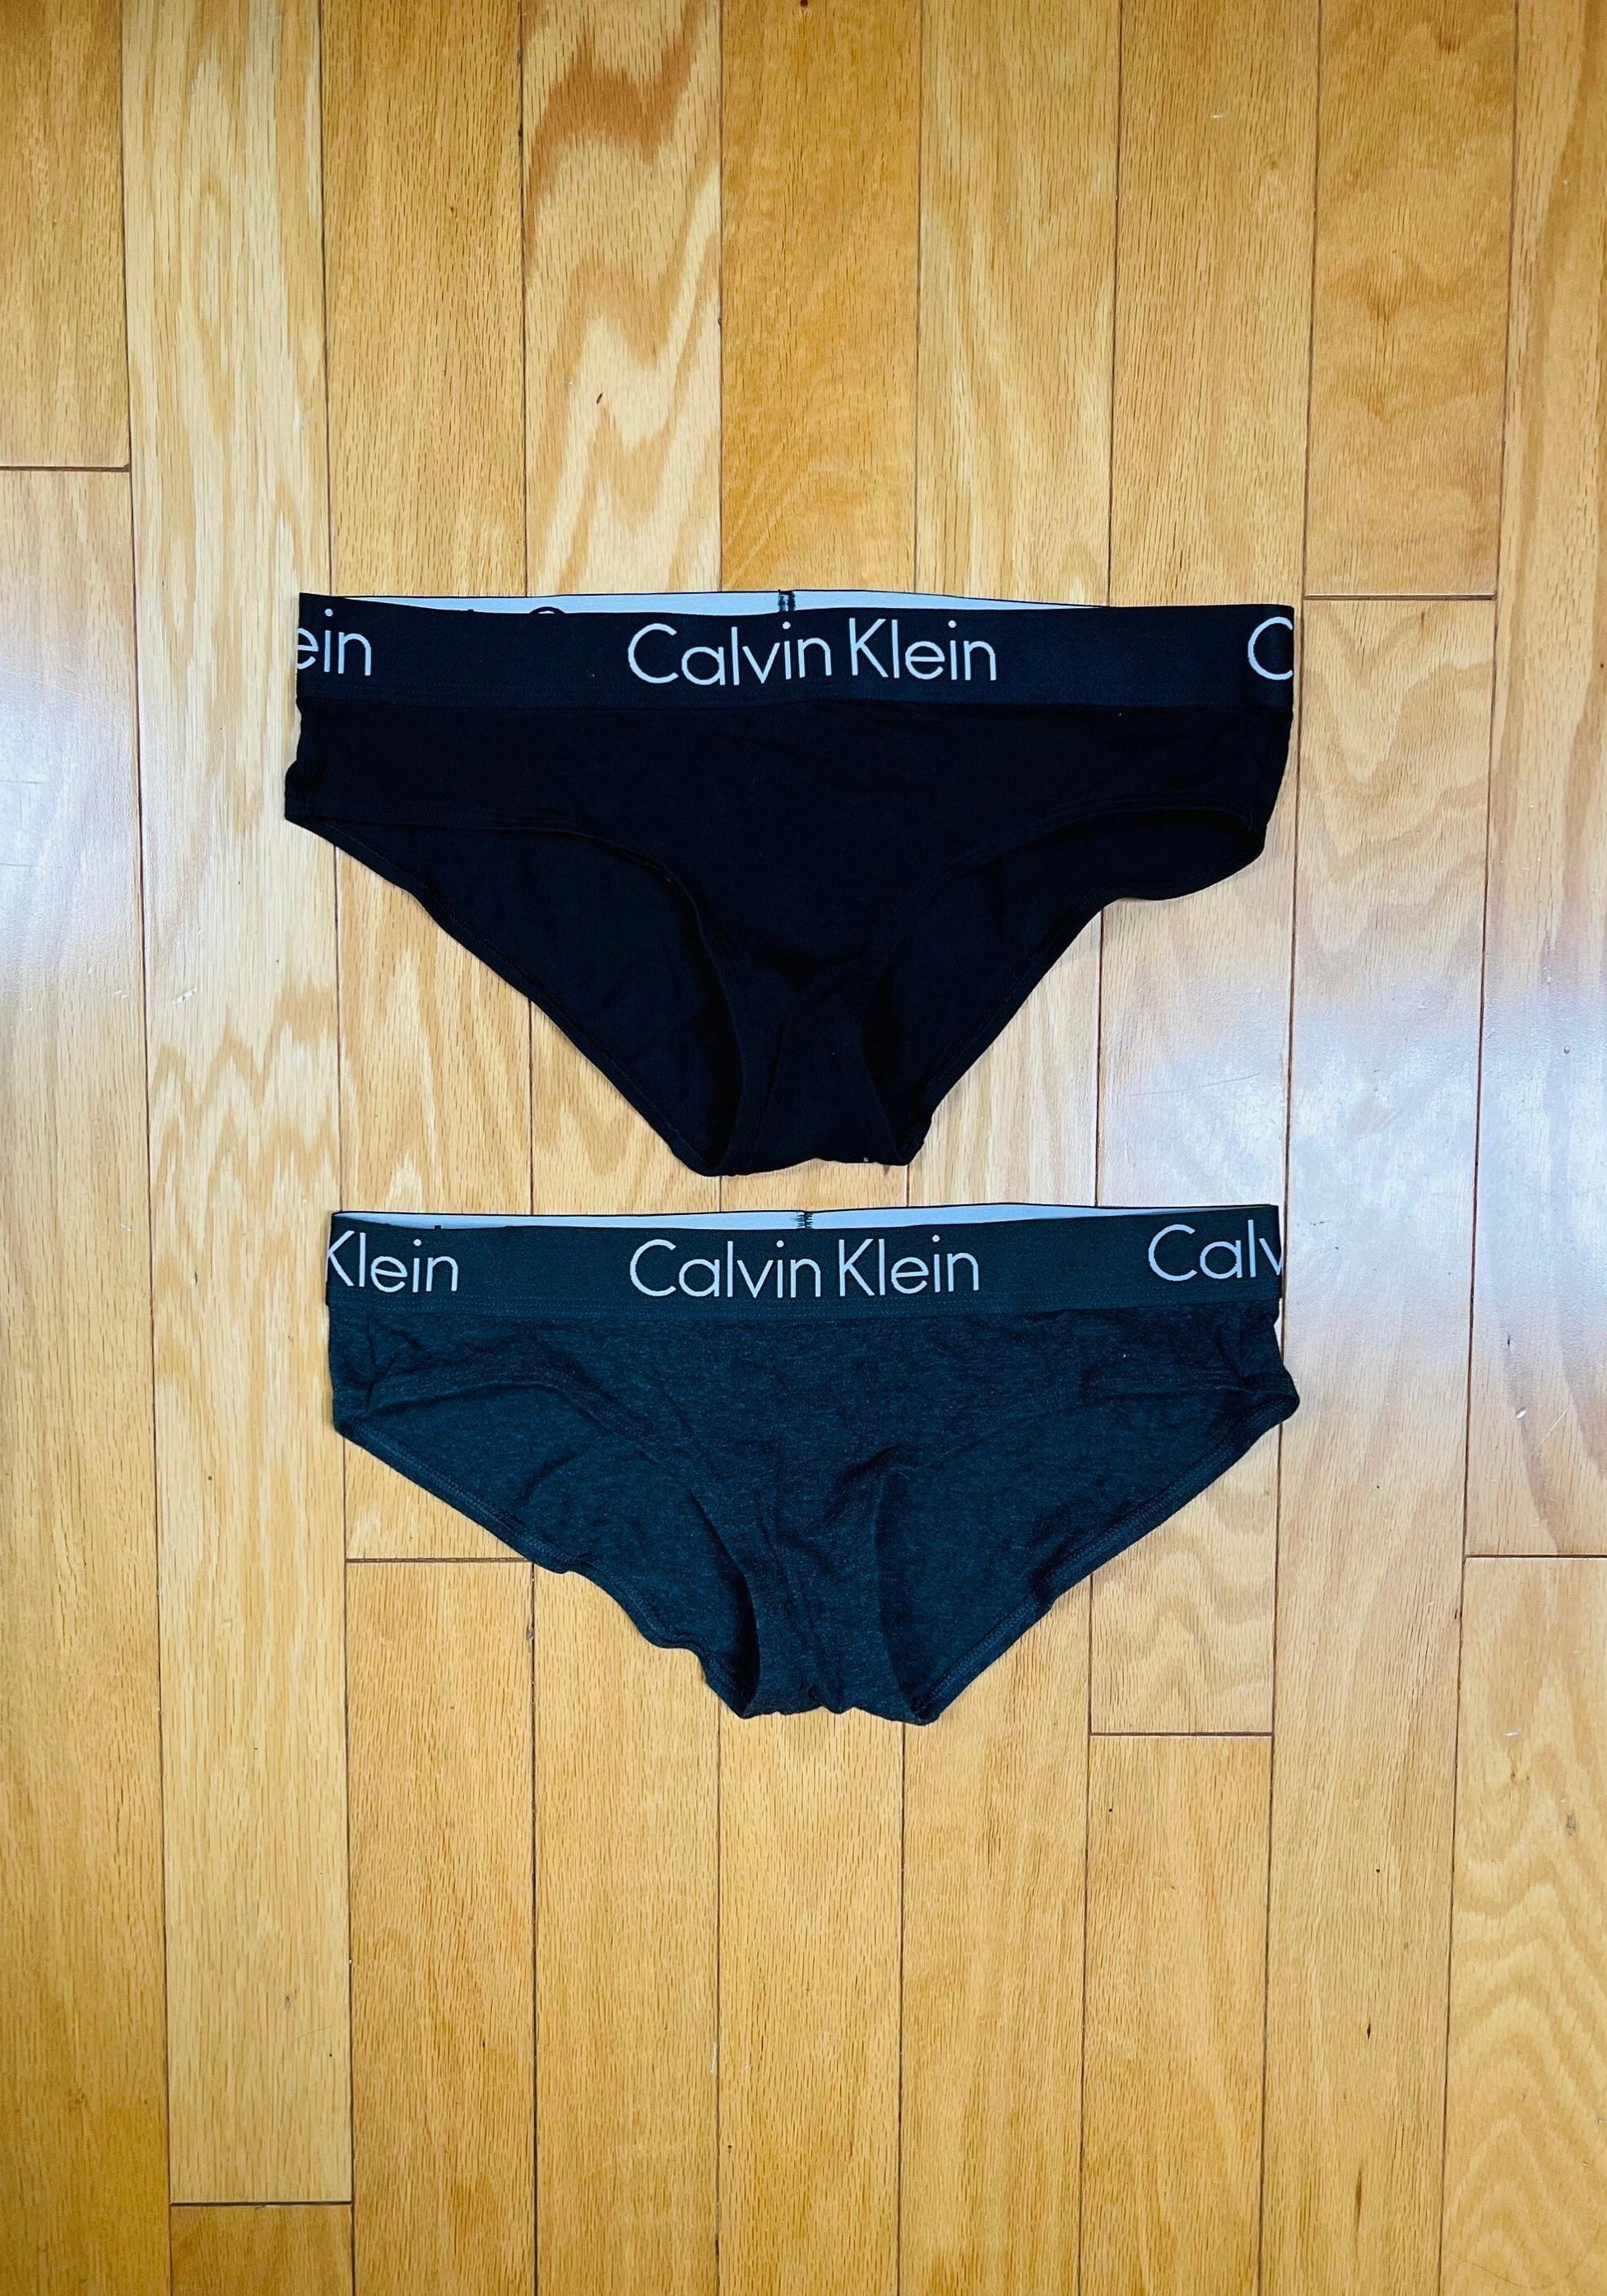 Calvin Klein Underwear - Etsy